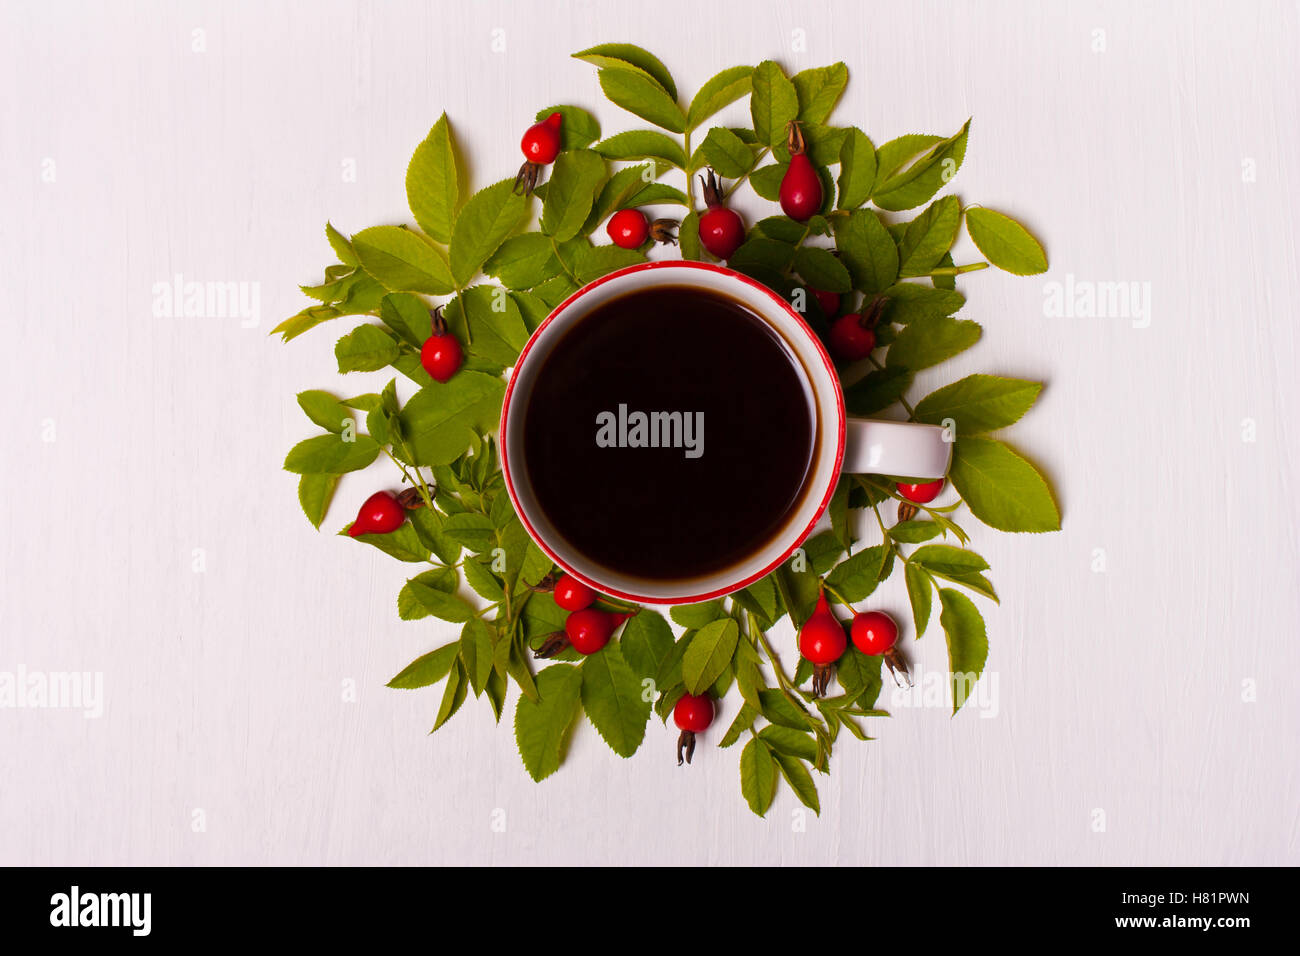 Tasse Kaffee auf einem weißen Hintergrund in grünen Blättern und roten Beeren, Blumen. Flach legen, Top Aussicht Stockfoto